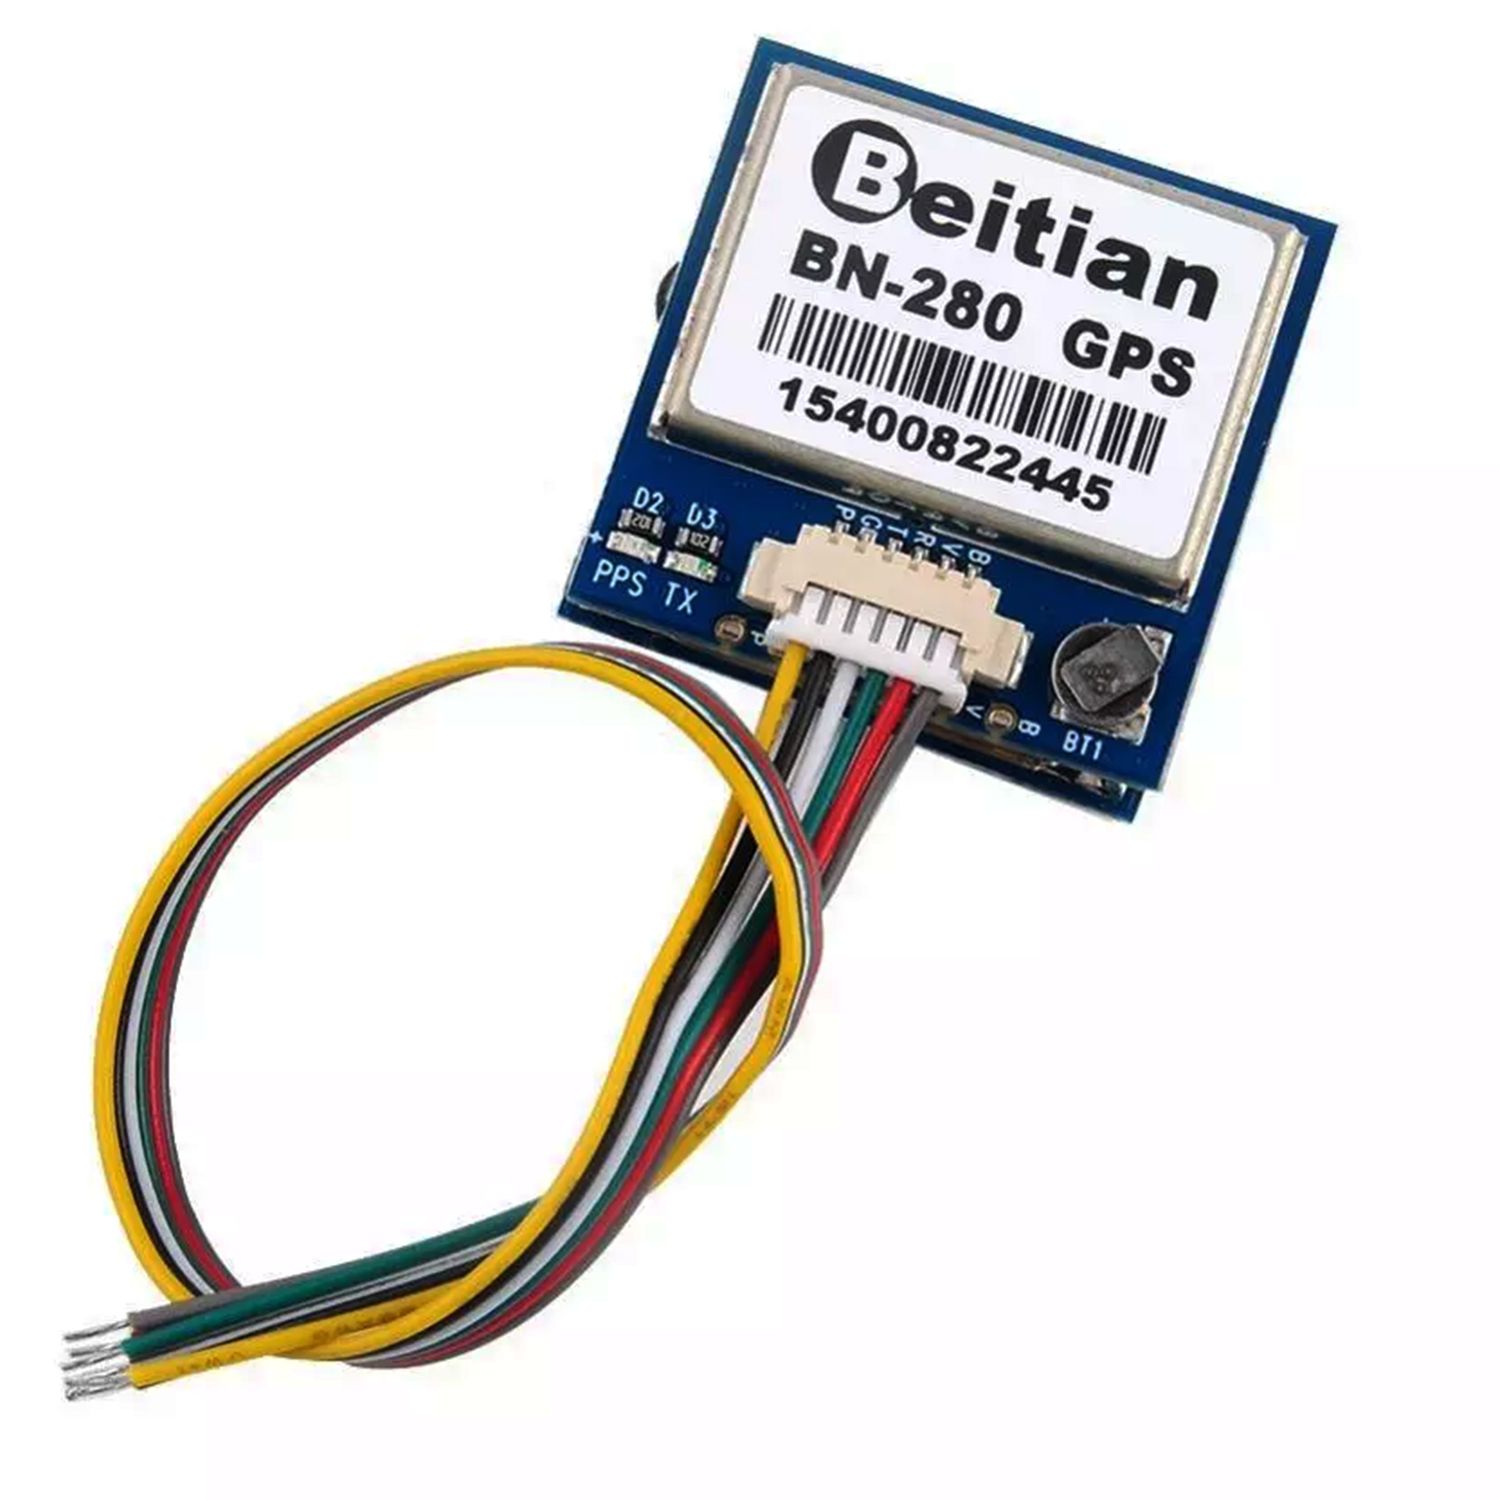 Модуль Ublox GPS Beitian BN-280D с компасом